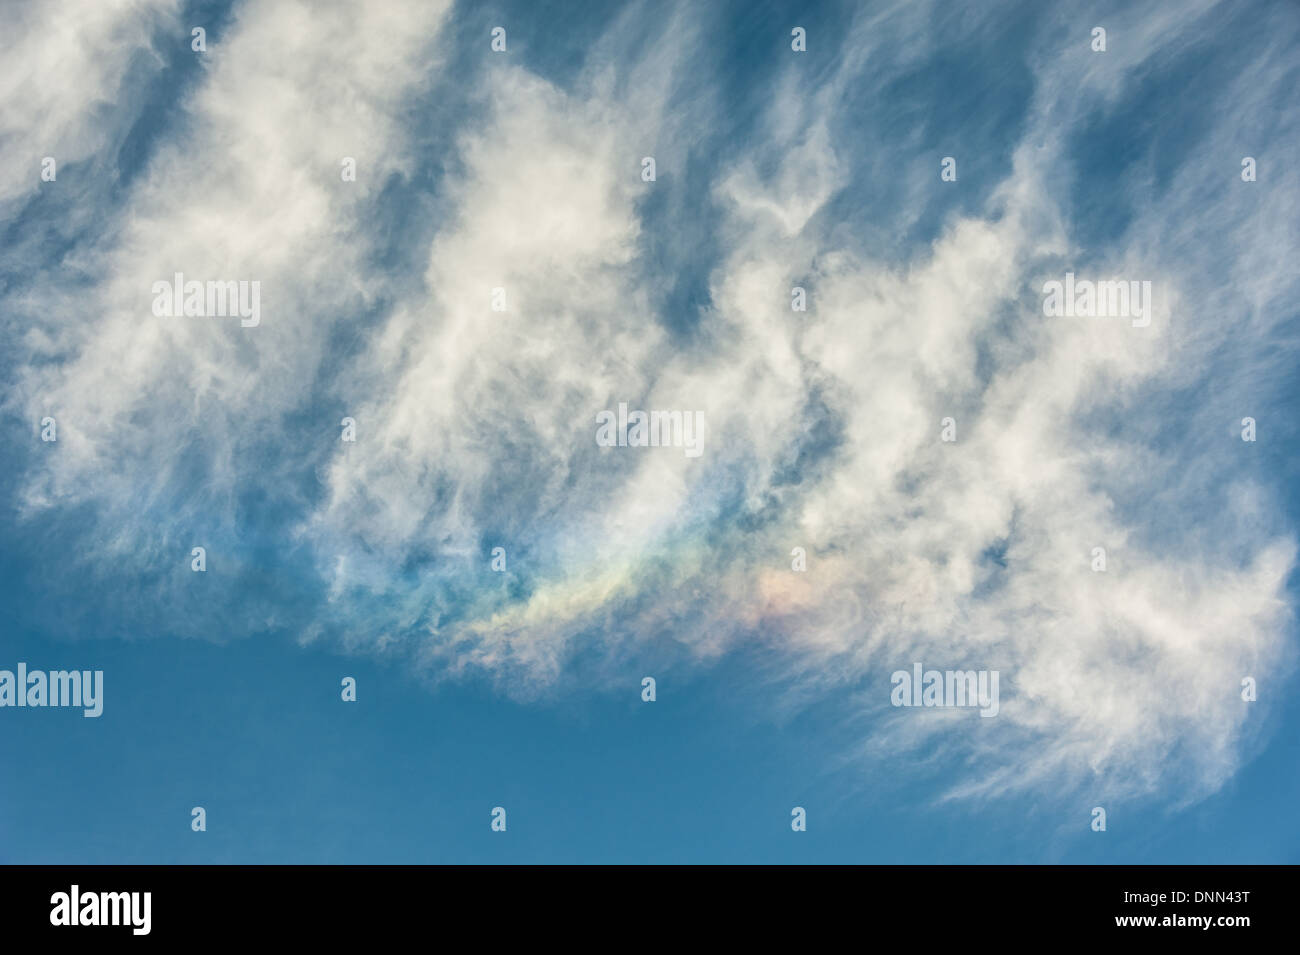 Spazzola i colori dei bordi di nuvole arcobaleno (o "fire rainbows"). L'effetto prismatico è causato dalla luce solare e cristalli di ghiaccio. Foto Stock